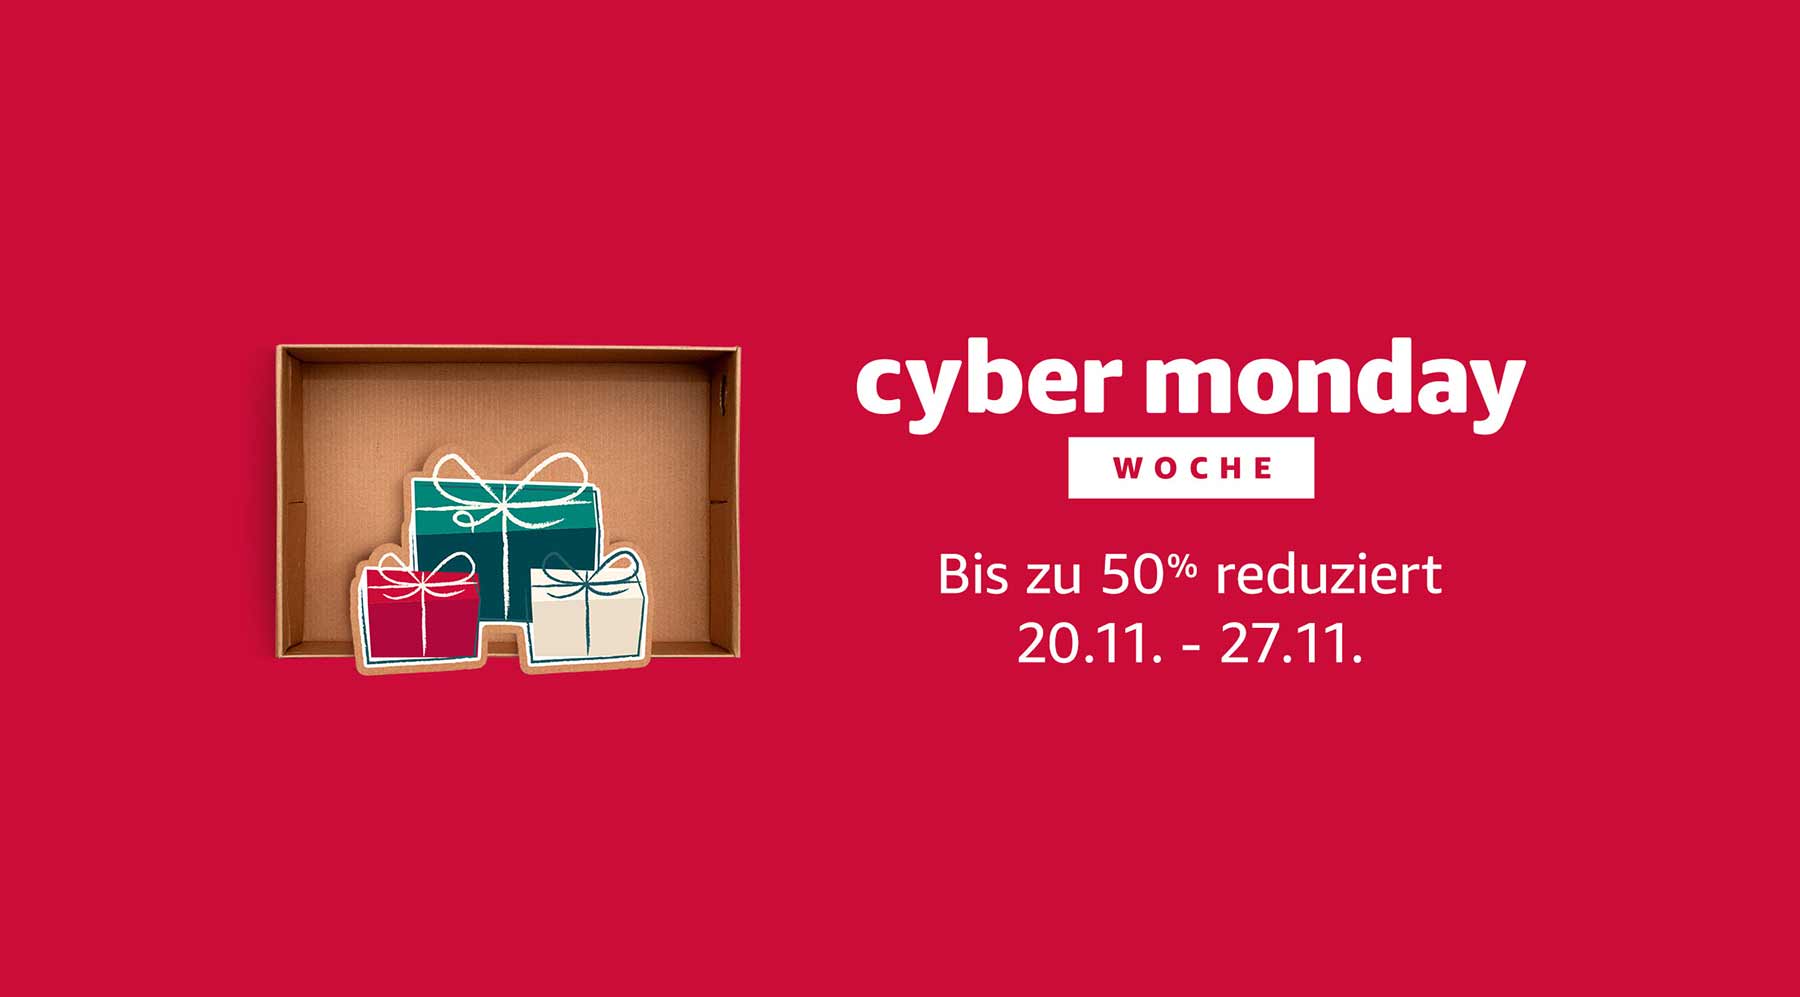 Mit diesem Link bei der Cyber Monday Woche auf Amazon richtig sparen cyber-monday-woche-amazon 